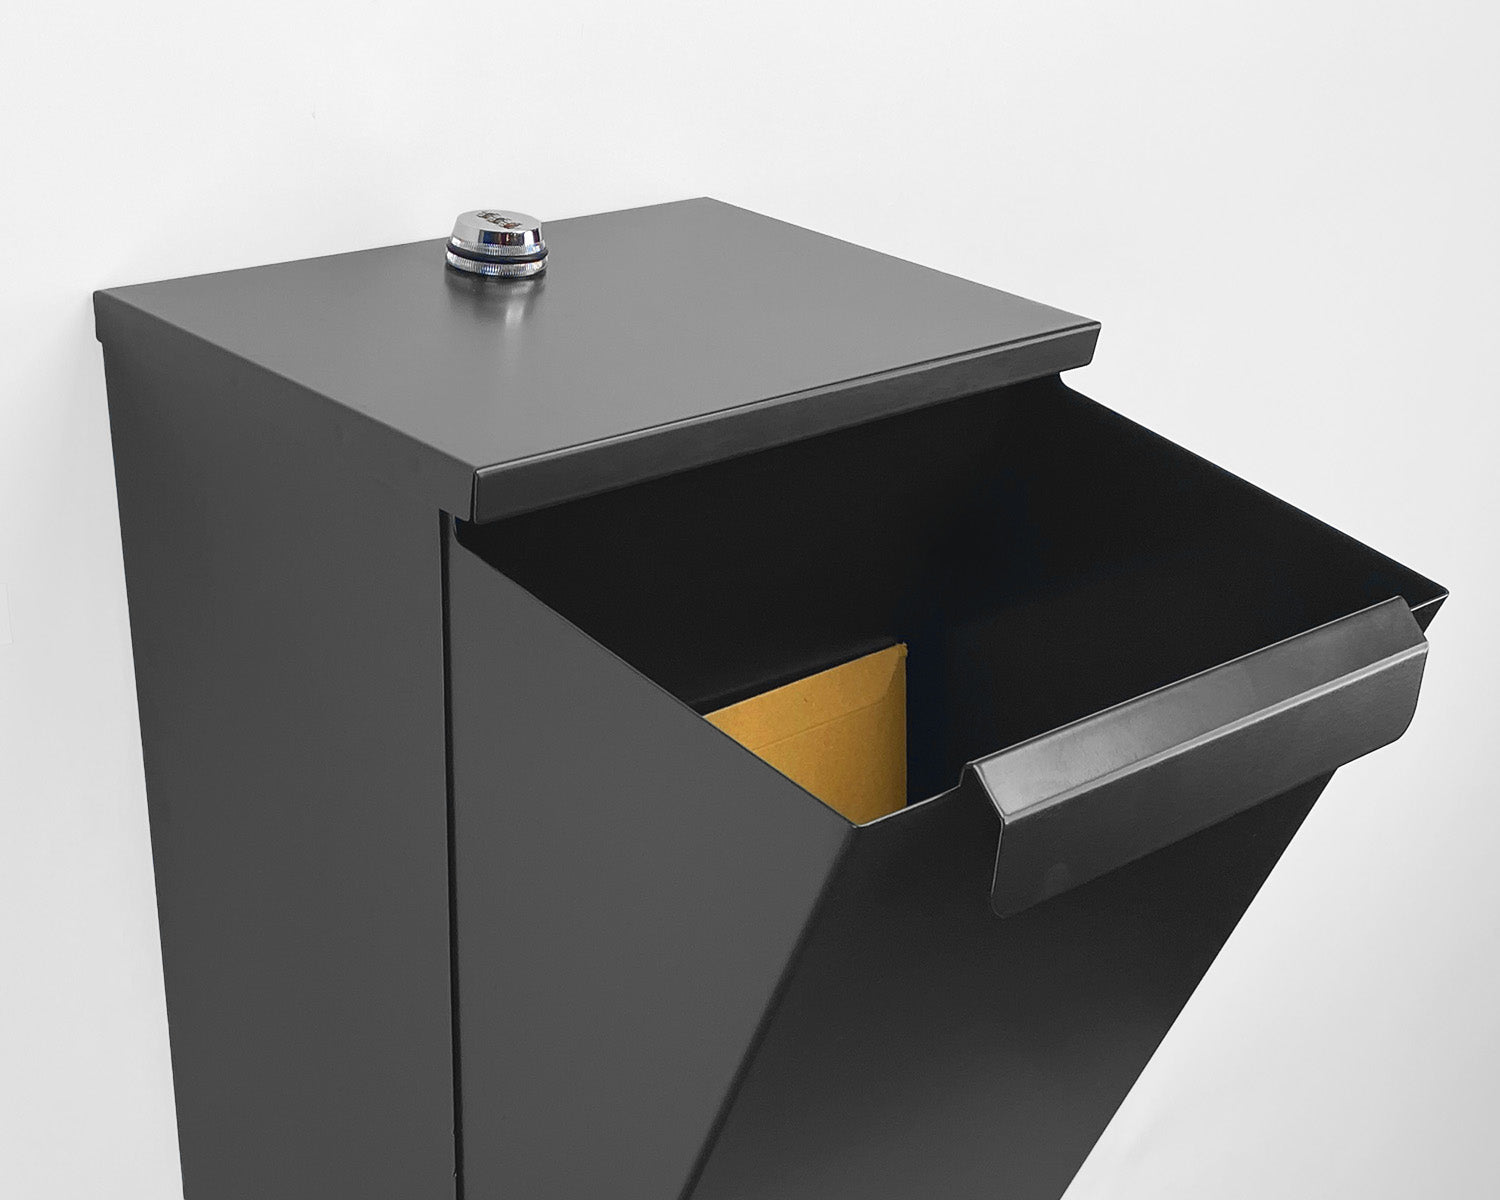 Lockable Wall Mount Secure Parcel Box - Keeps Parcel Deliveries Secure